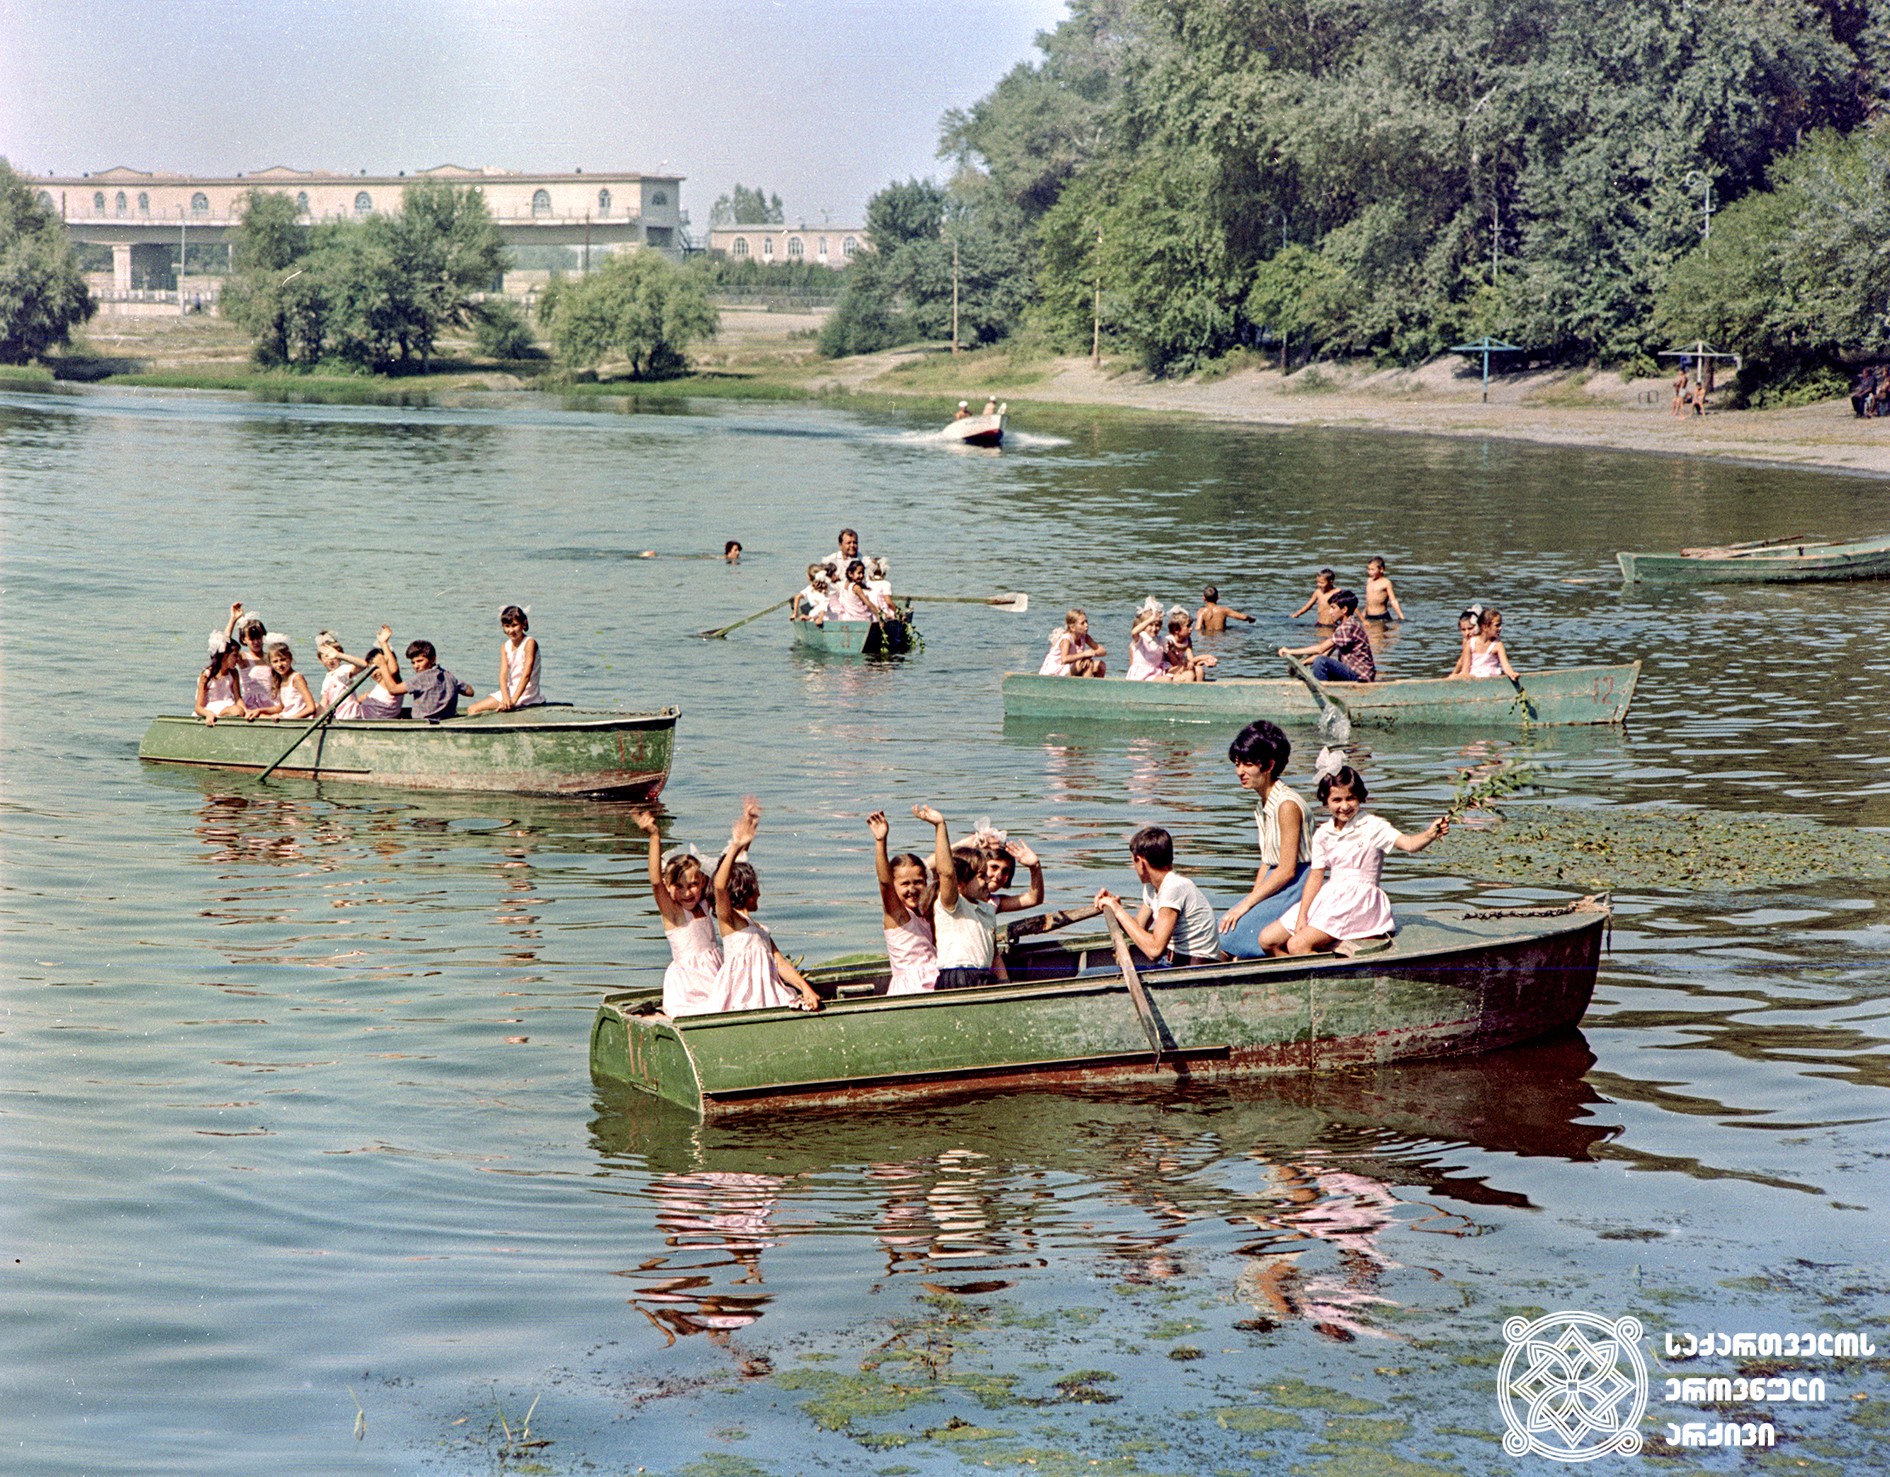 რუსთავის დასასვენებელი პარკი. 1971 წელი. <br>
Rustavi Amusement Park, 1971.